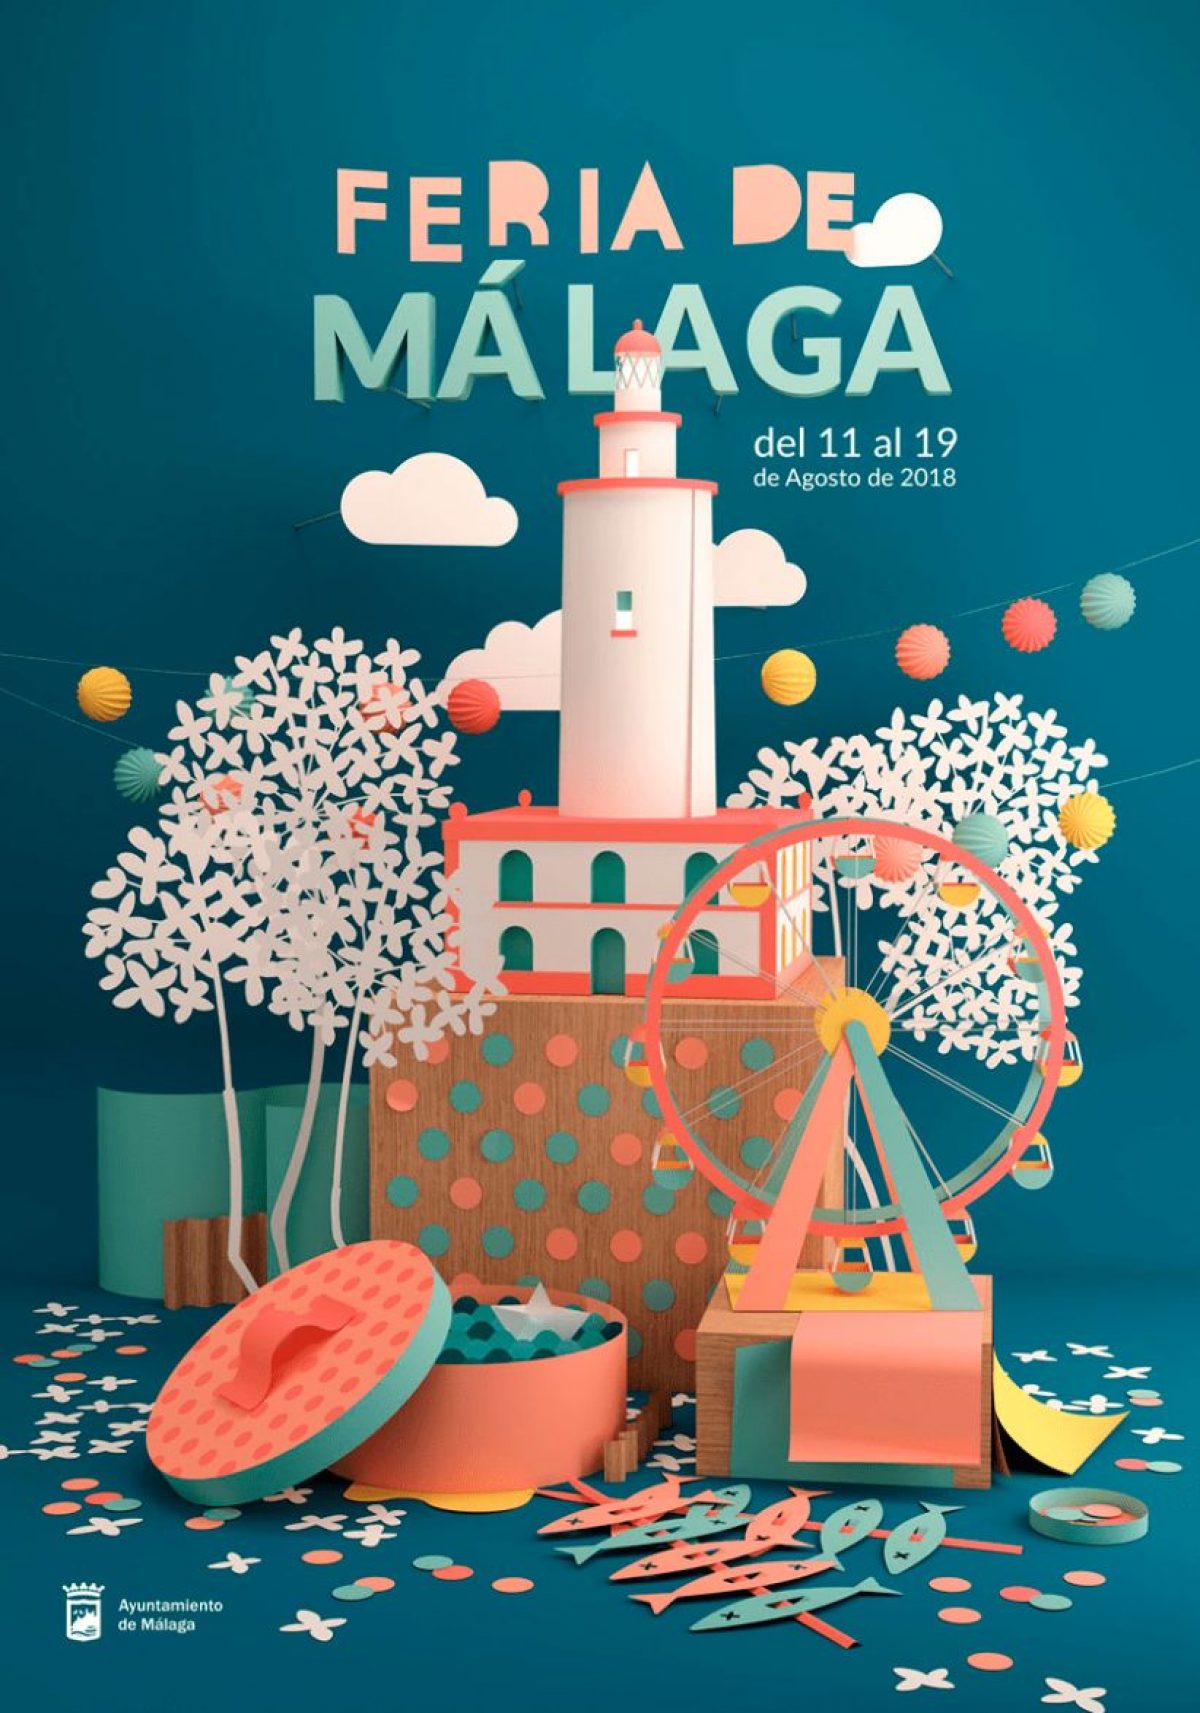 Malaga-Fair-2018